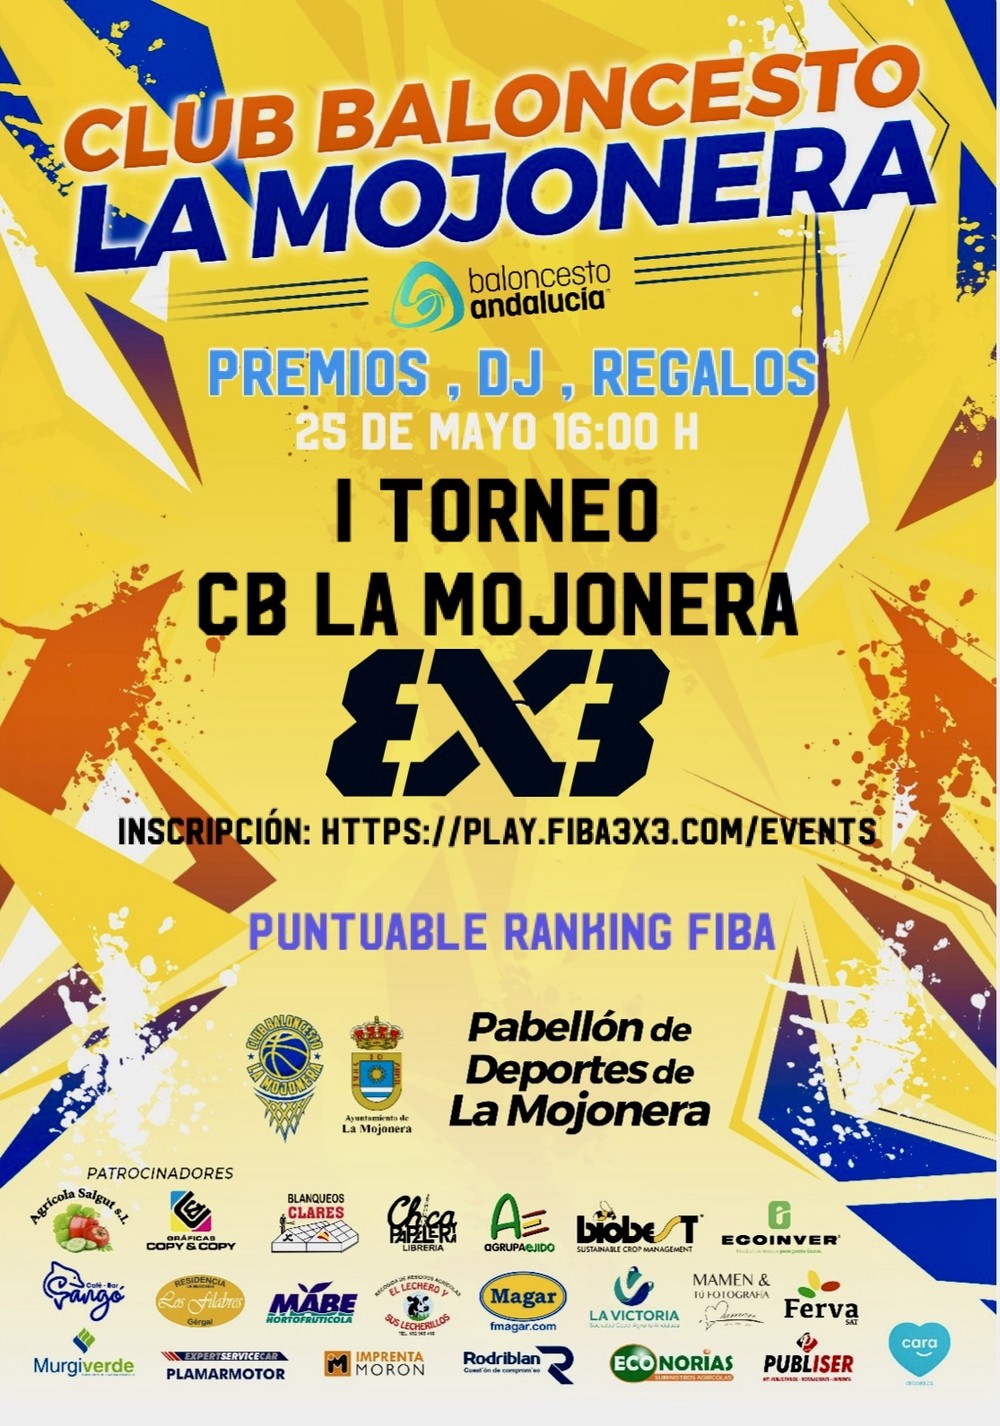 El club baloncesto La Mojonera organiza un torneo oficial puntuable para FIBA 3x3 el 25 de mayo